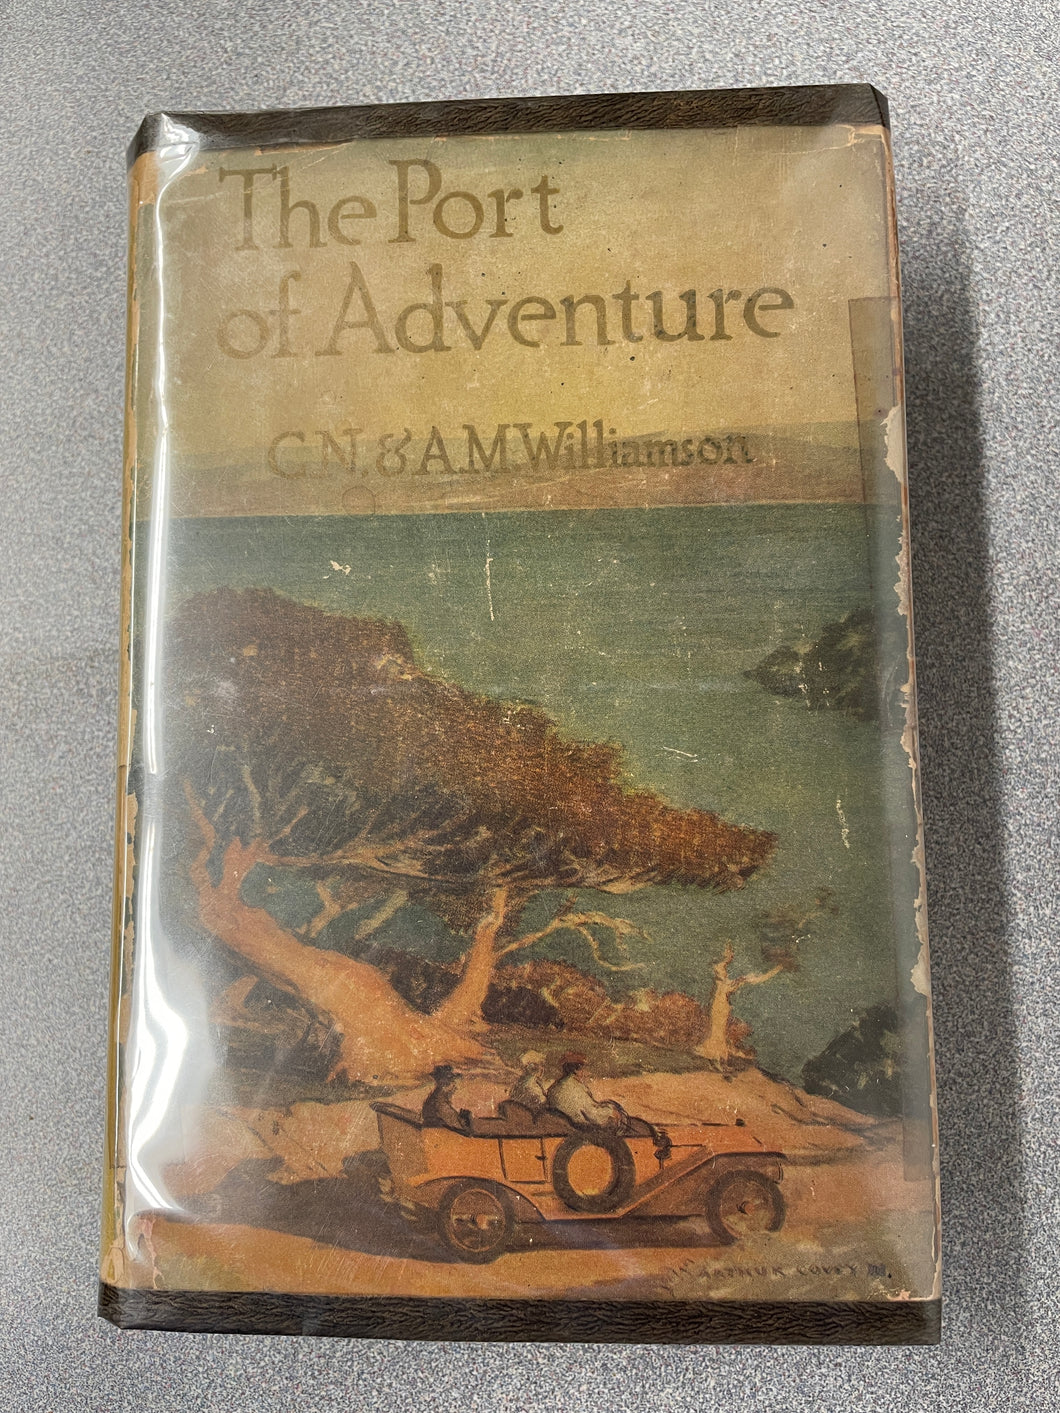 Williamson, C. N. and A. M. Williamson, The Port of Adventure  [1913] CC 11/23